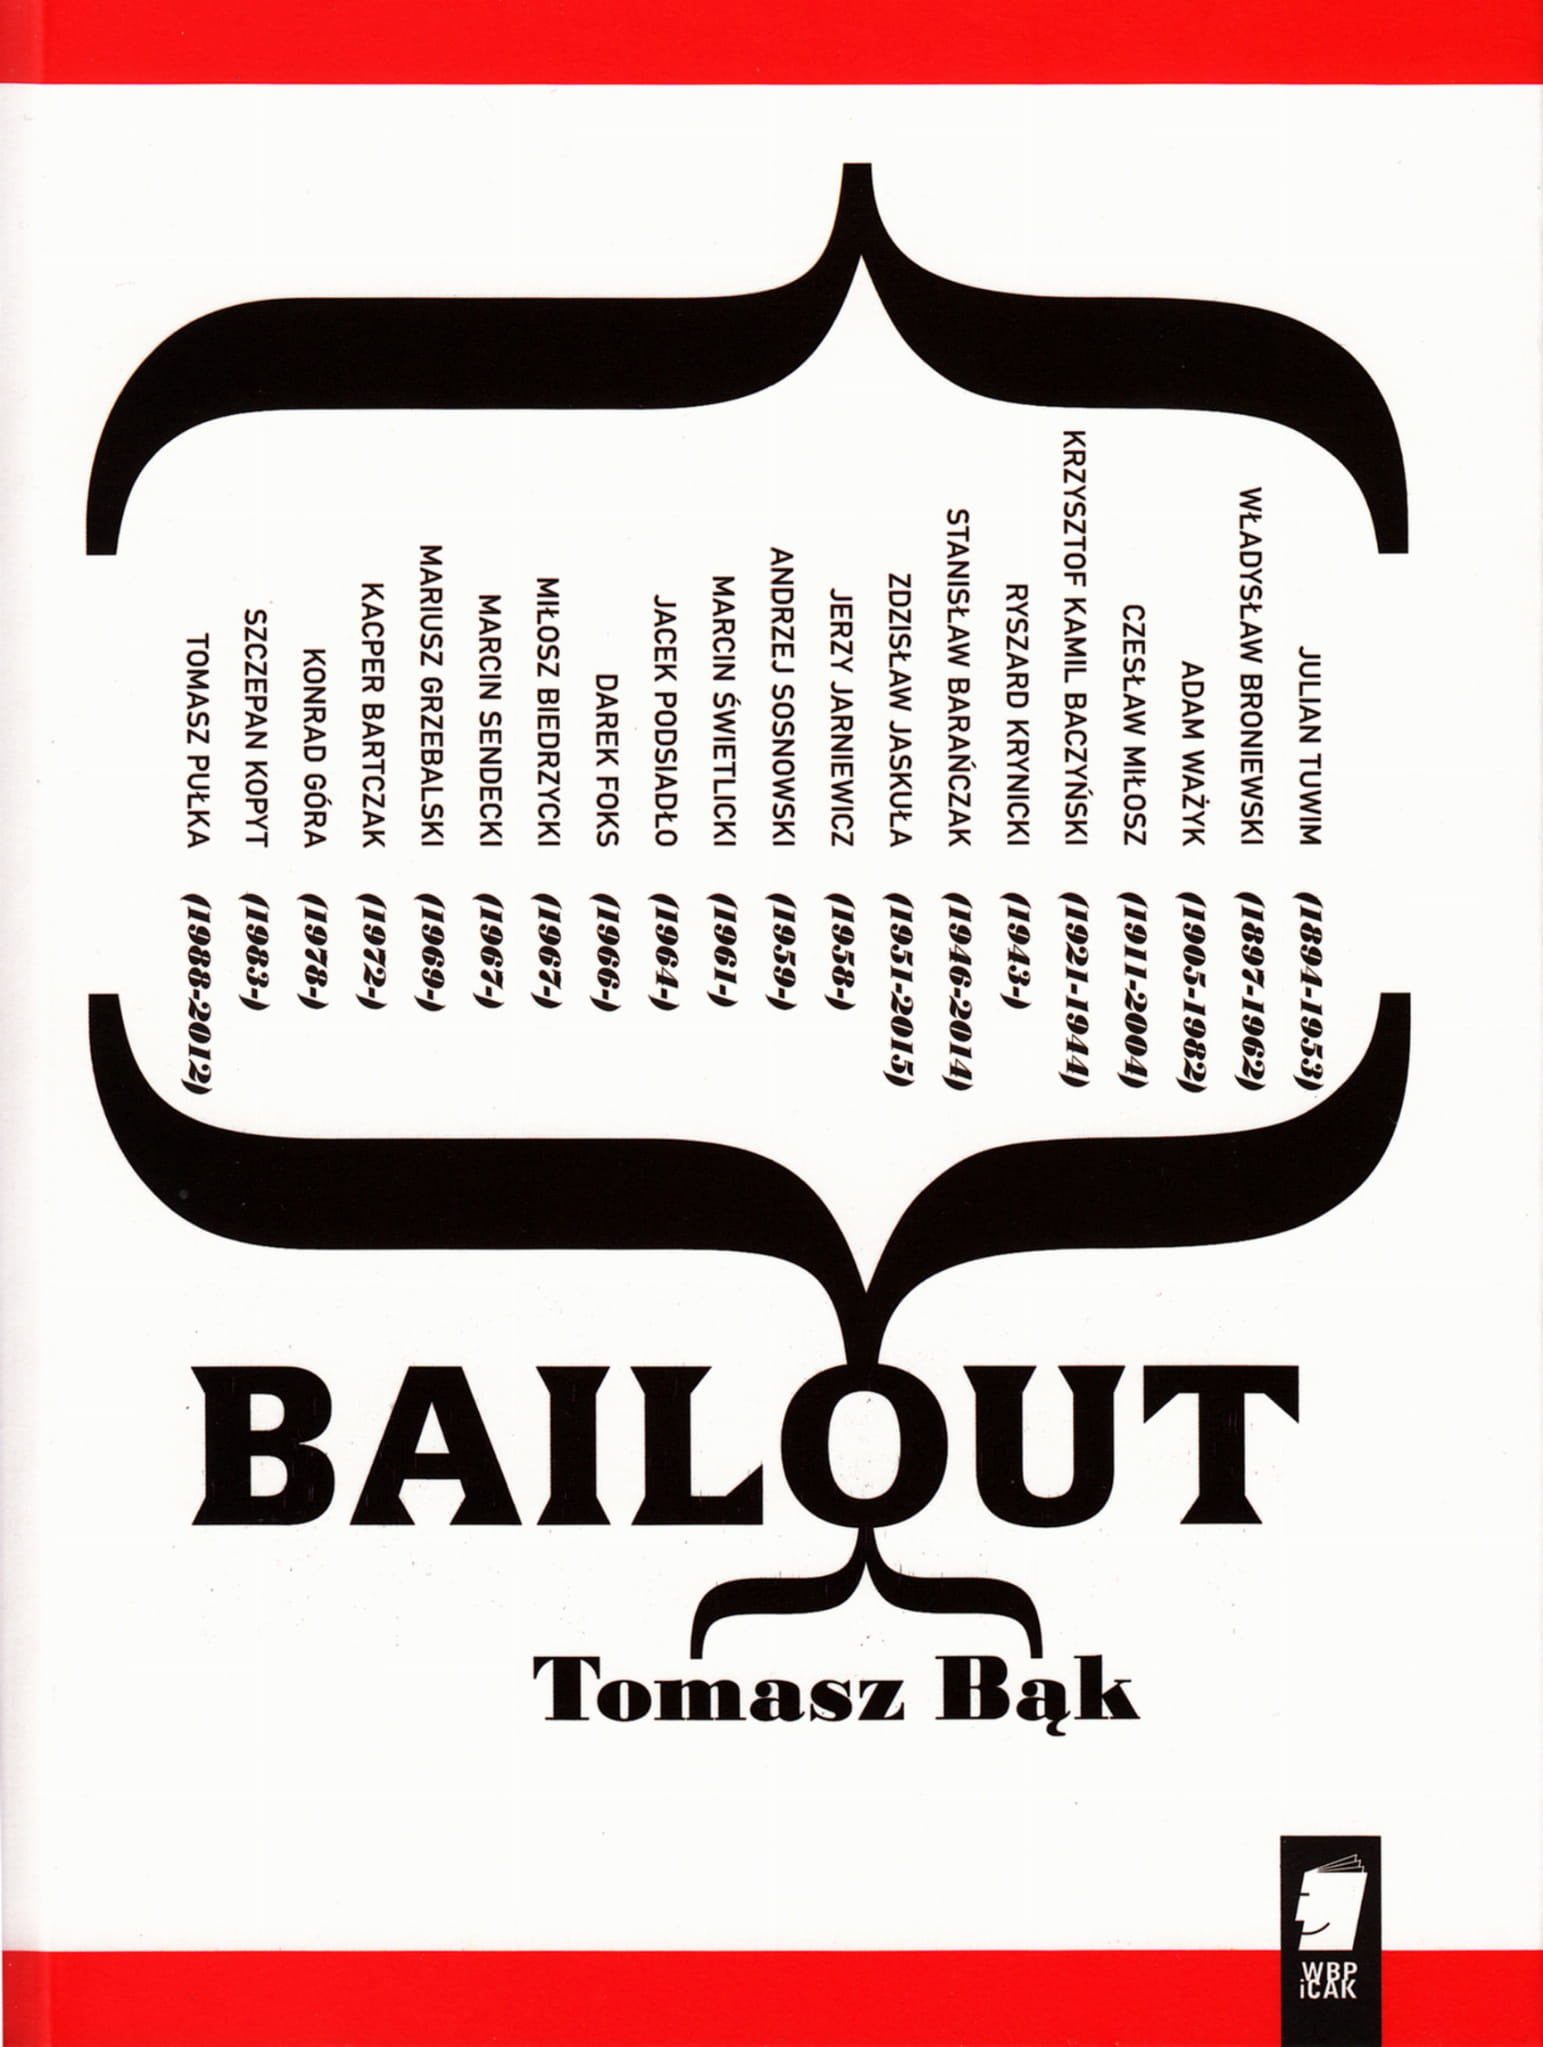 Okładka książki "Bailout" // fot. materiały prasowe